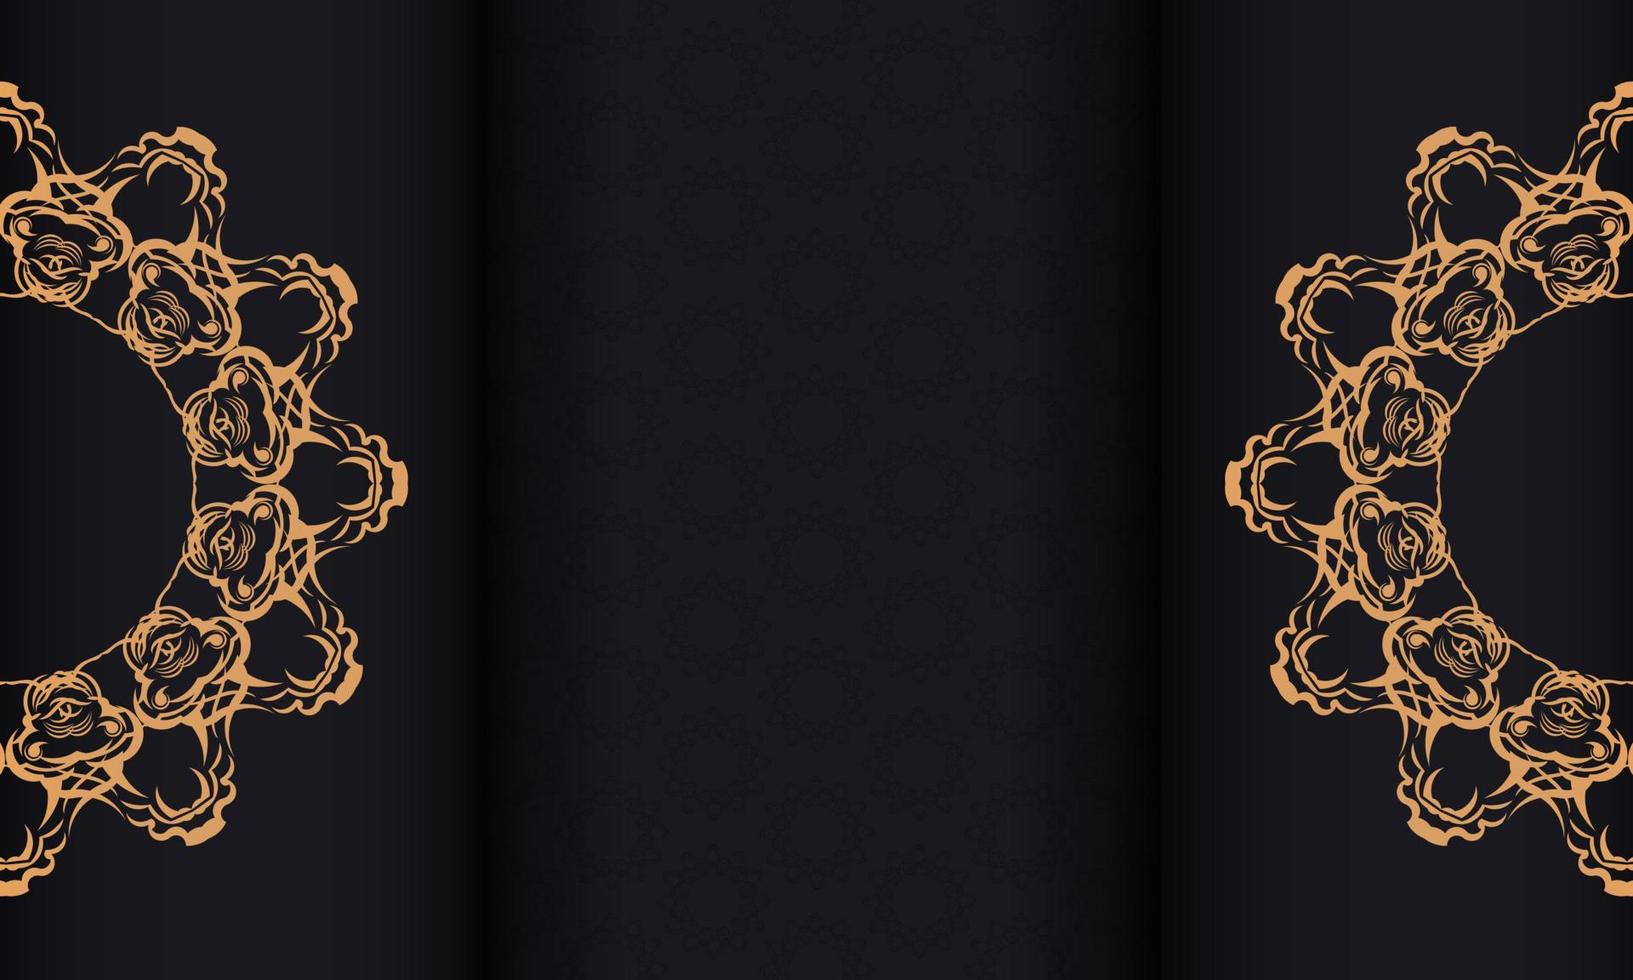 bannière noire avec de luxueux ornements dorés et placée sous le texte. conception d'invitation prête à imprimer avec des motifs vintage. vecteur